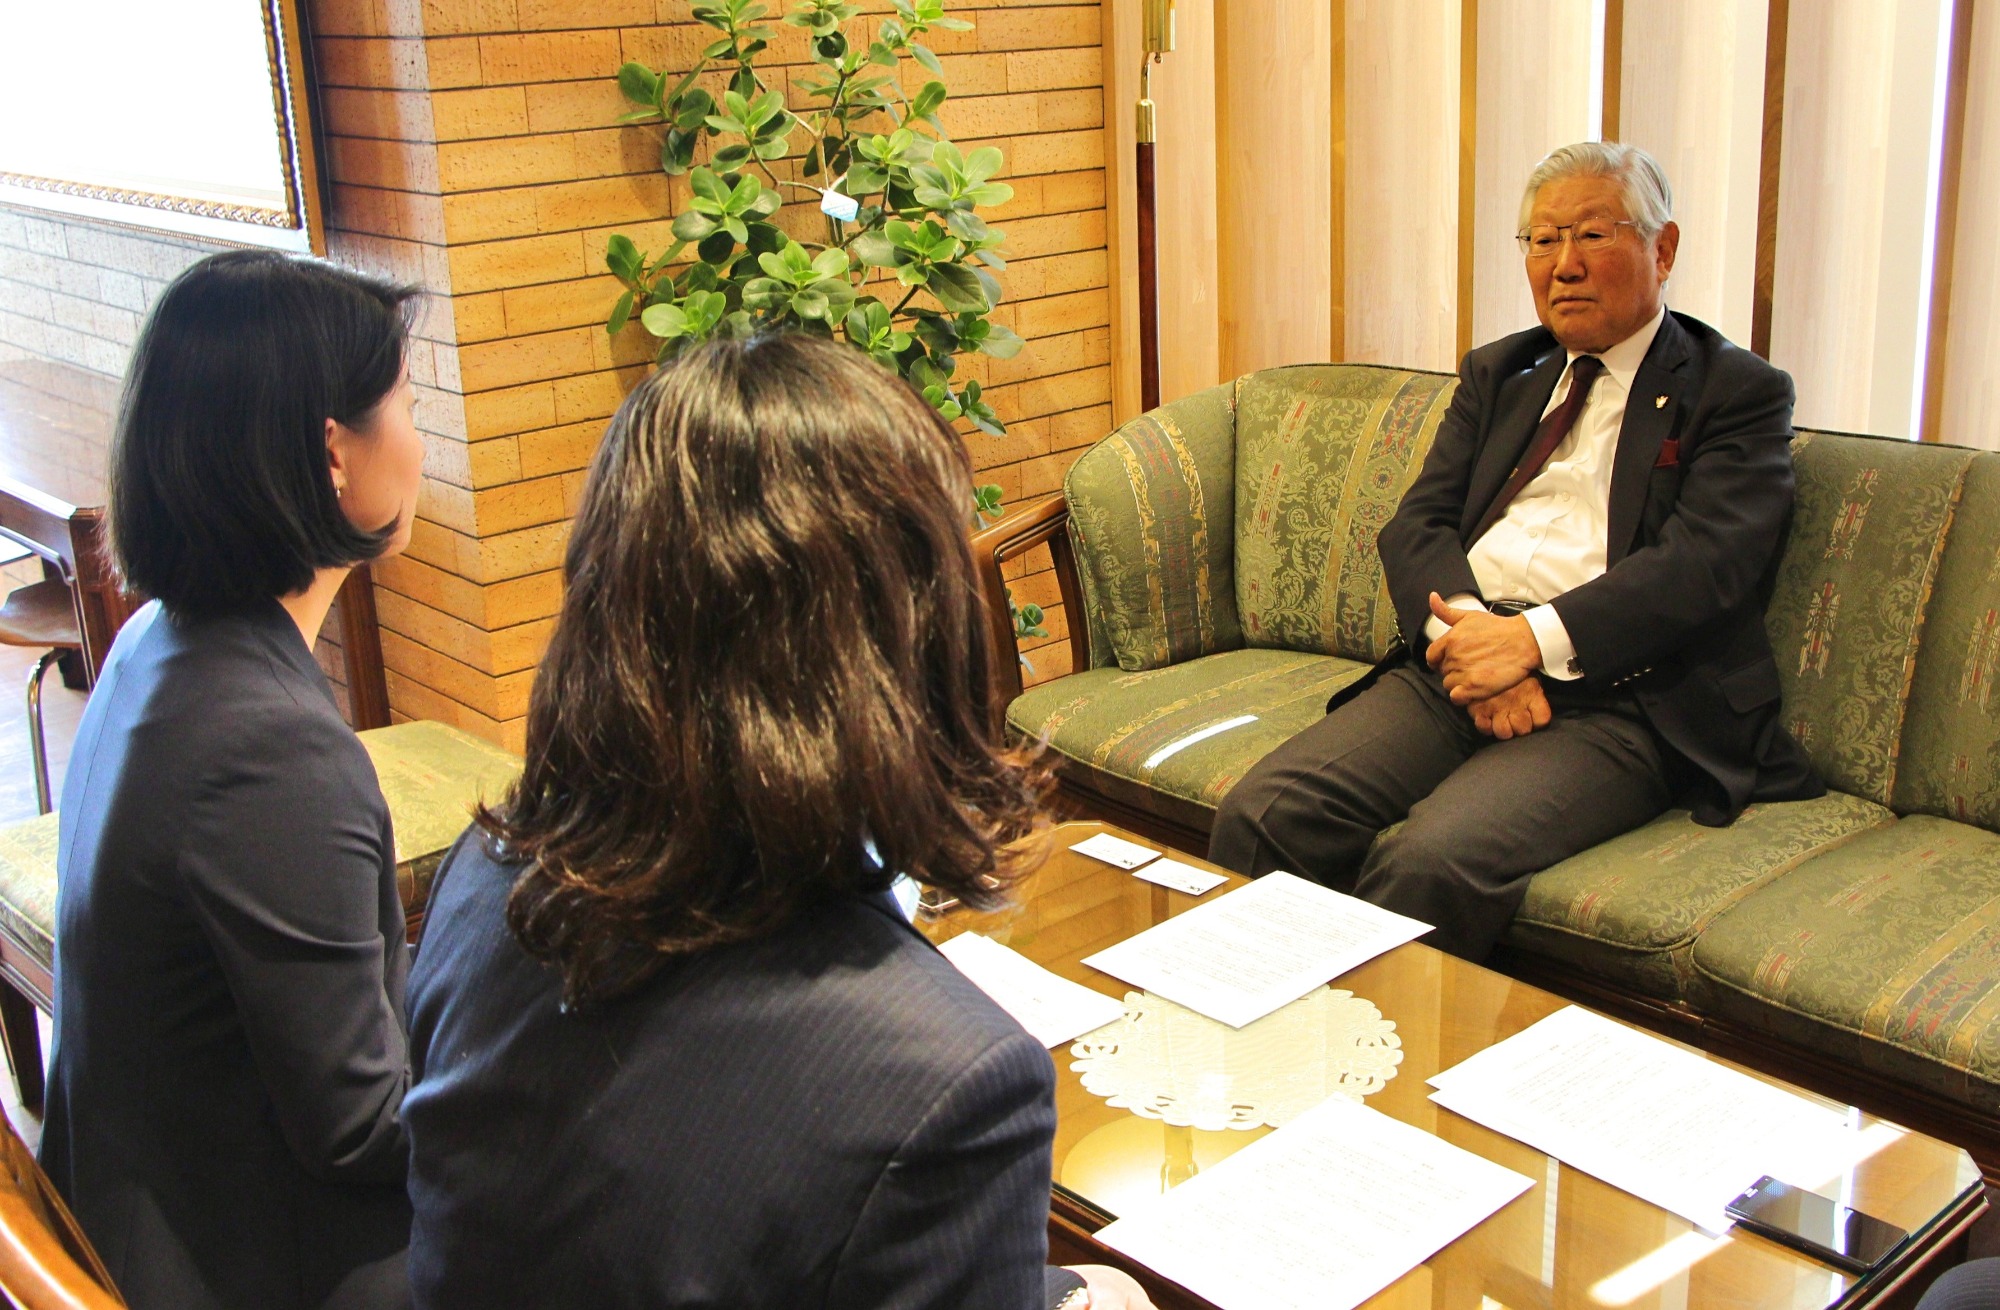 Interview: Yoshito Honda, APIC Trustee (Toshin International Corp. Honorary Chairman)